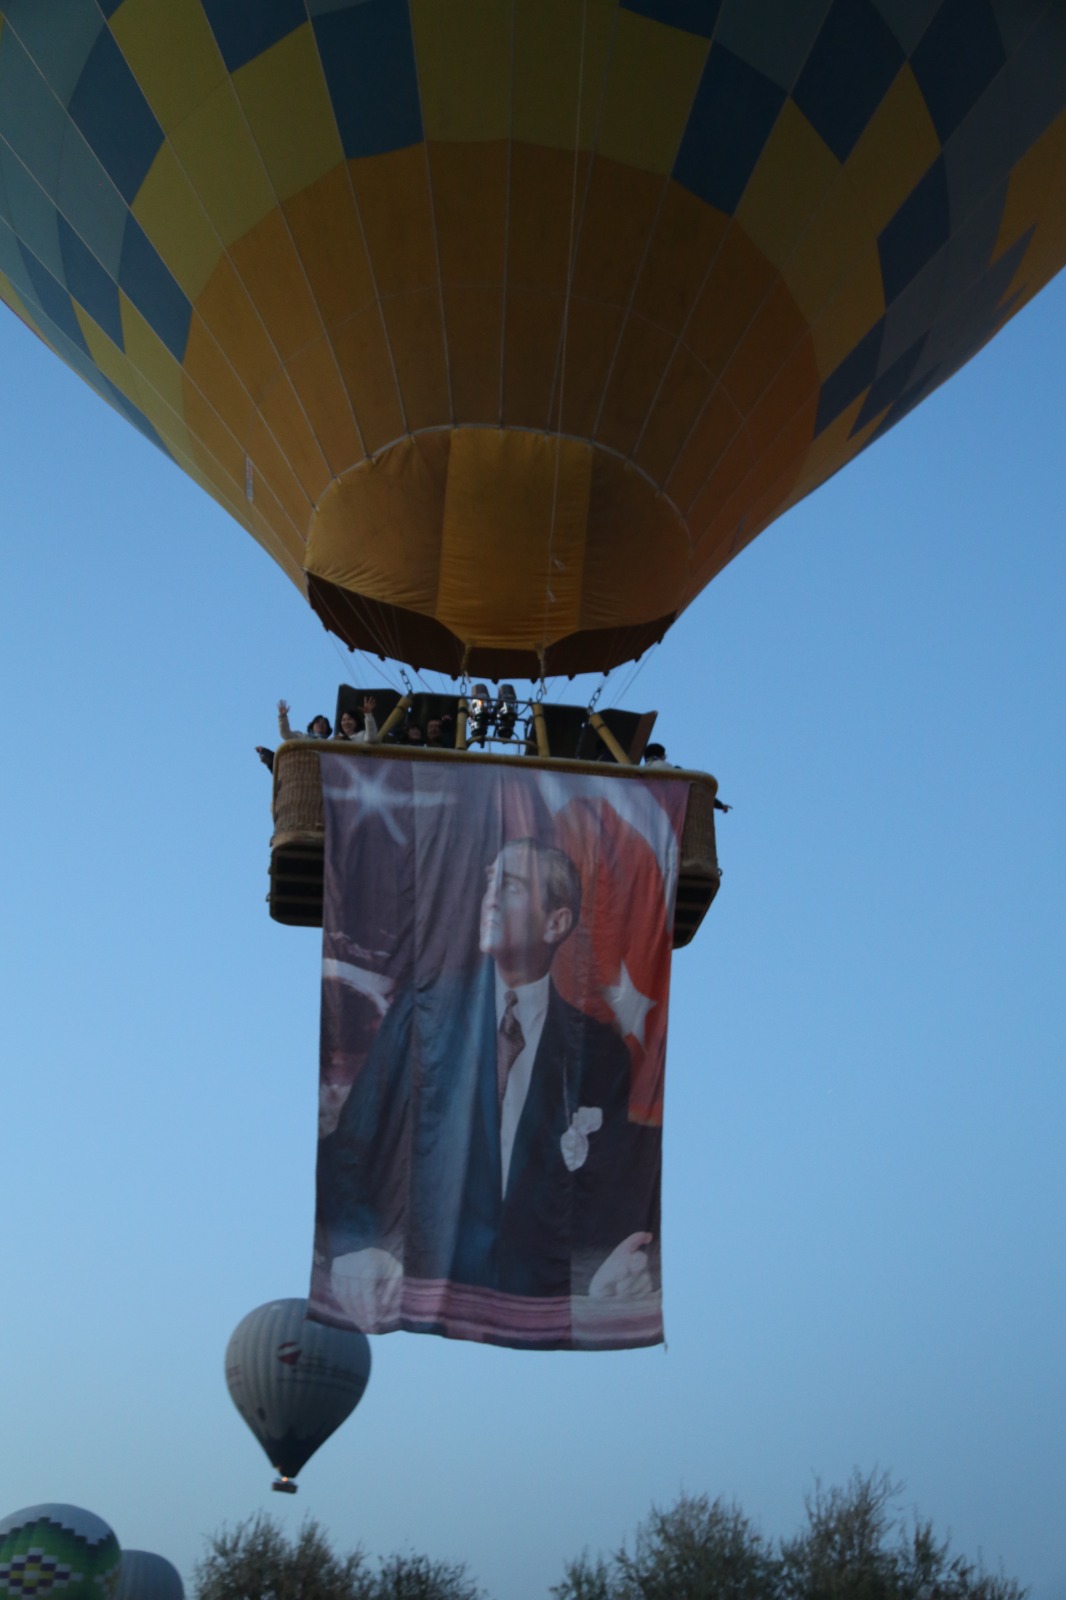 sicak-hava-balonlari-ataturk-posterleri-ve-turk-bayraklariyla-havalandi-3415-dhaphoto12.jpg